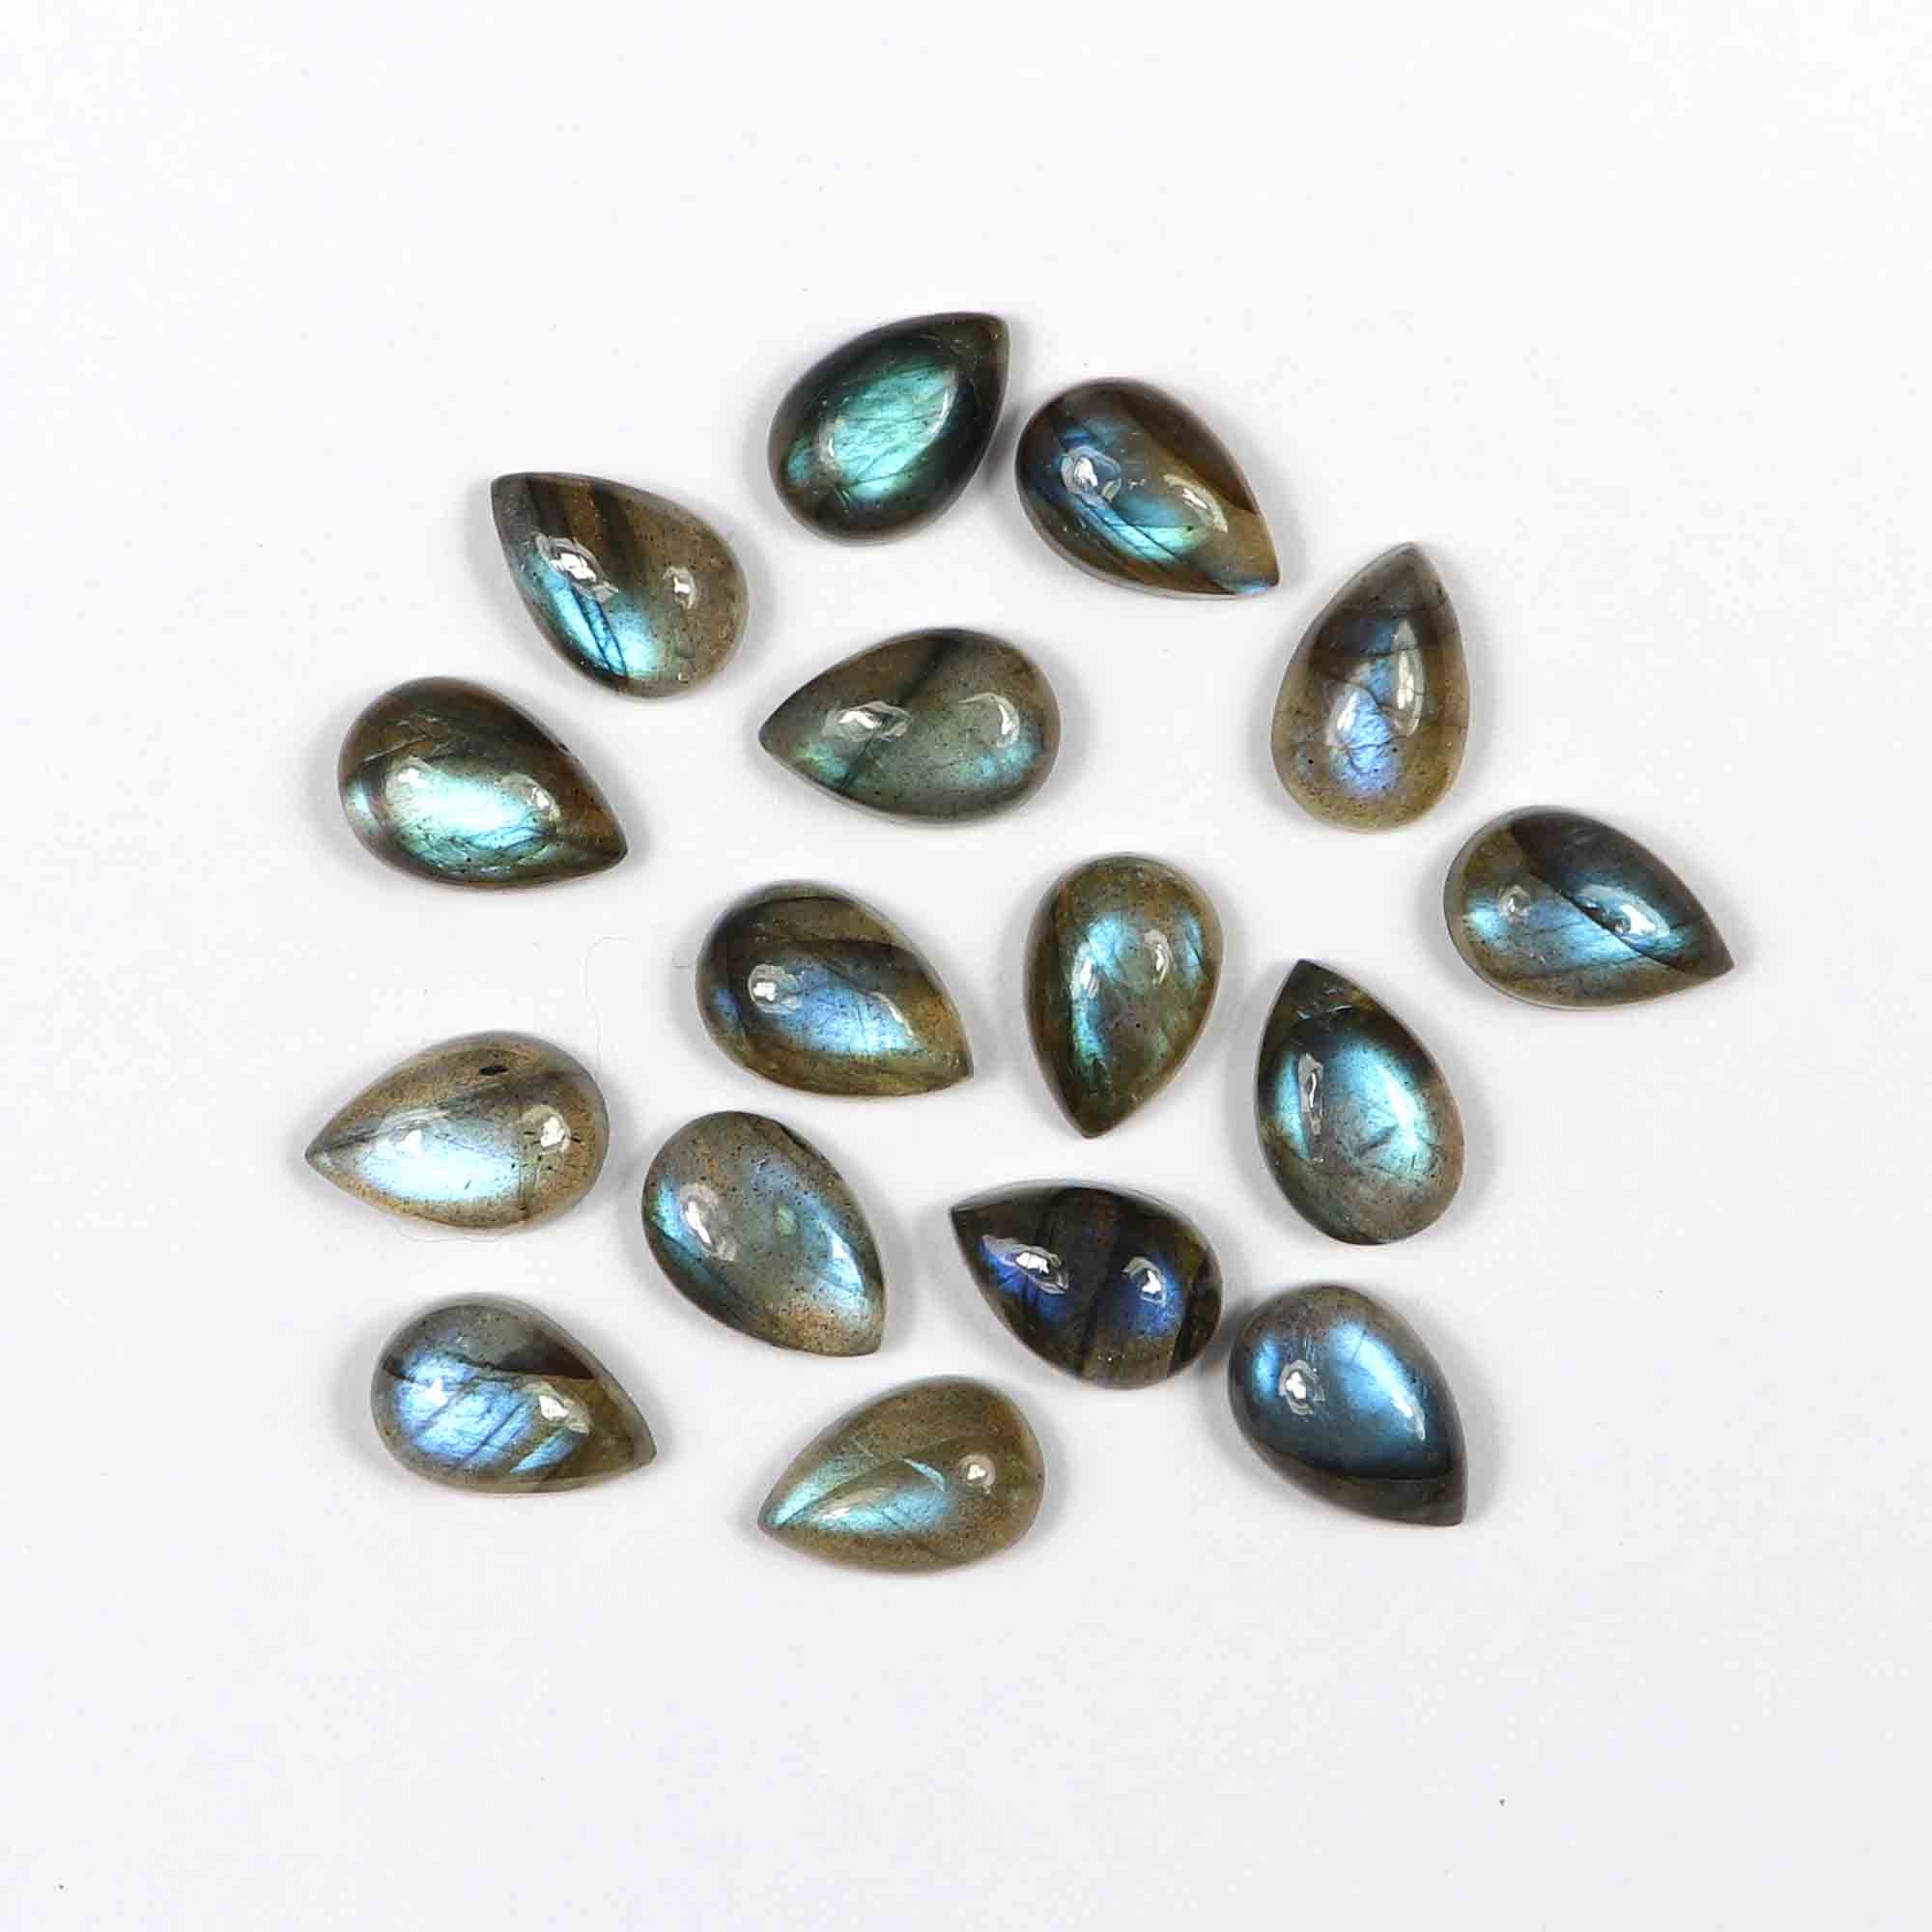 Calibrated Labradorite Semi Precious Stone for Jewelry 4x6MM Natural Labradorite Pear Cabochon Cut Gemstone